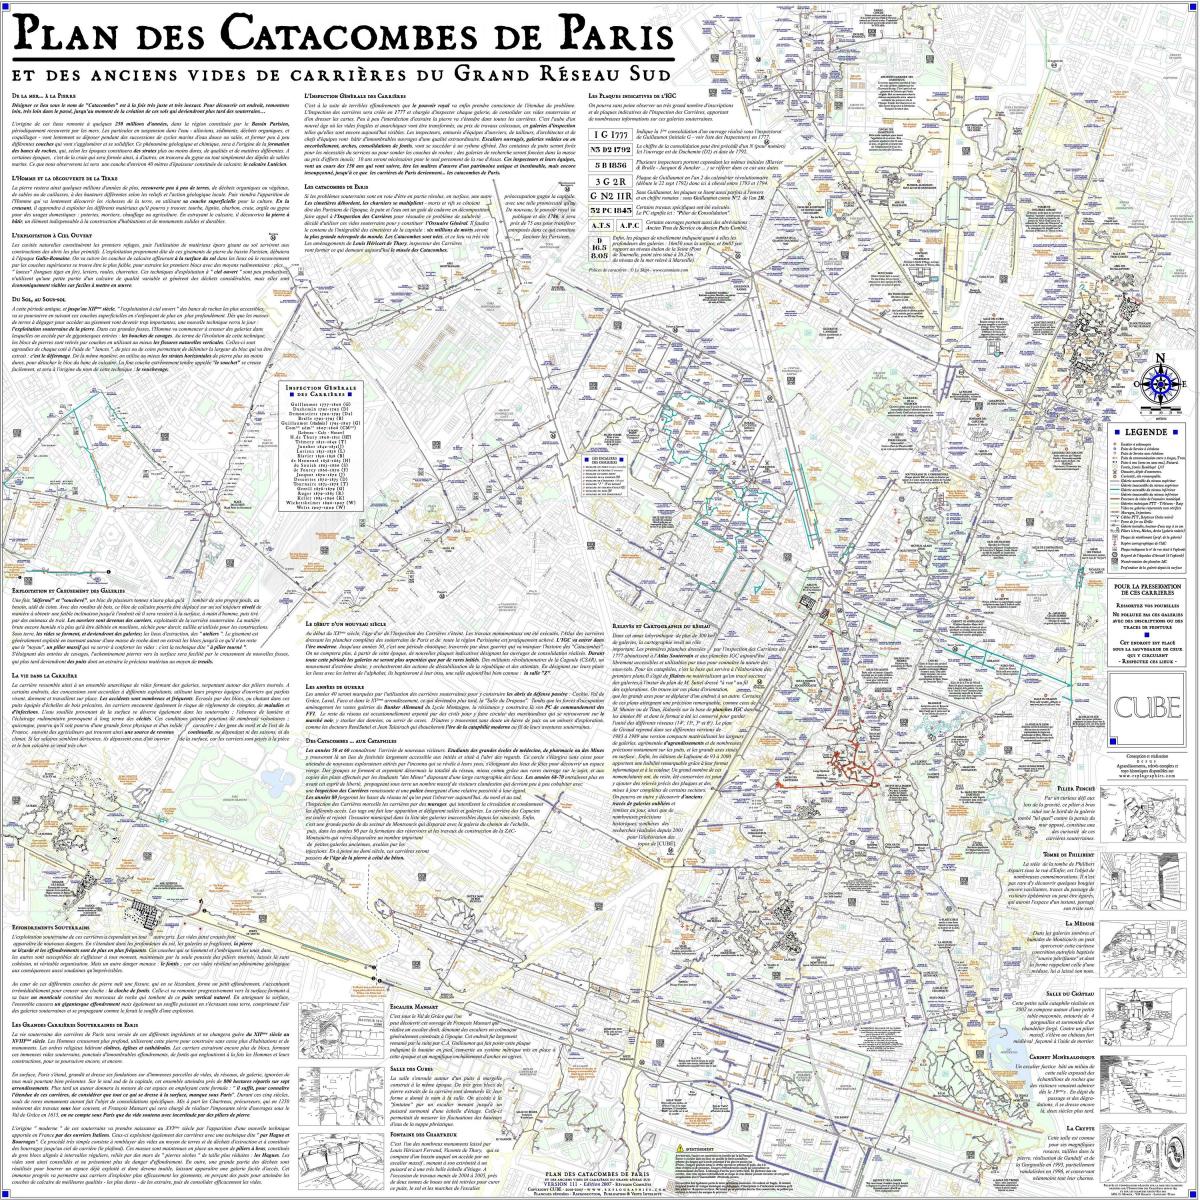 Mapa Paryskich katakumb